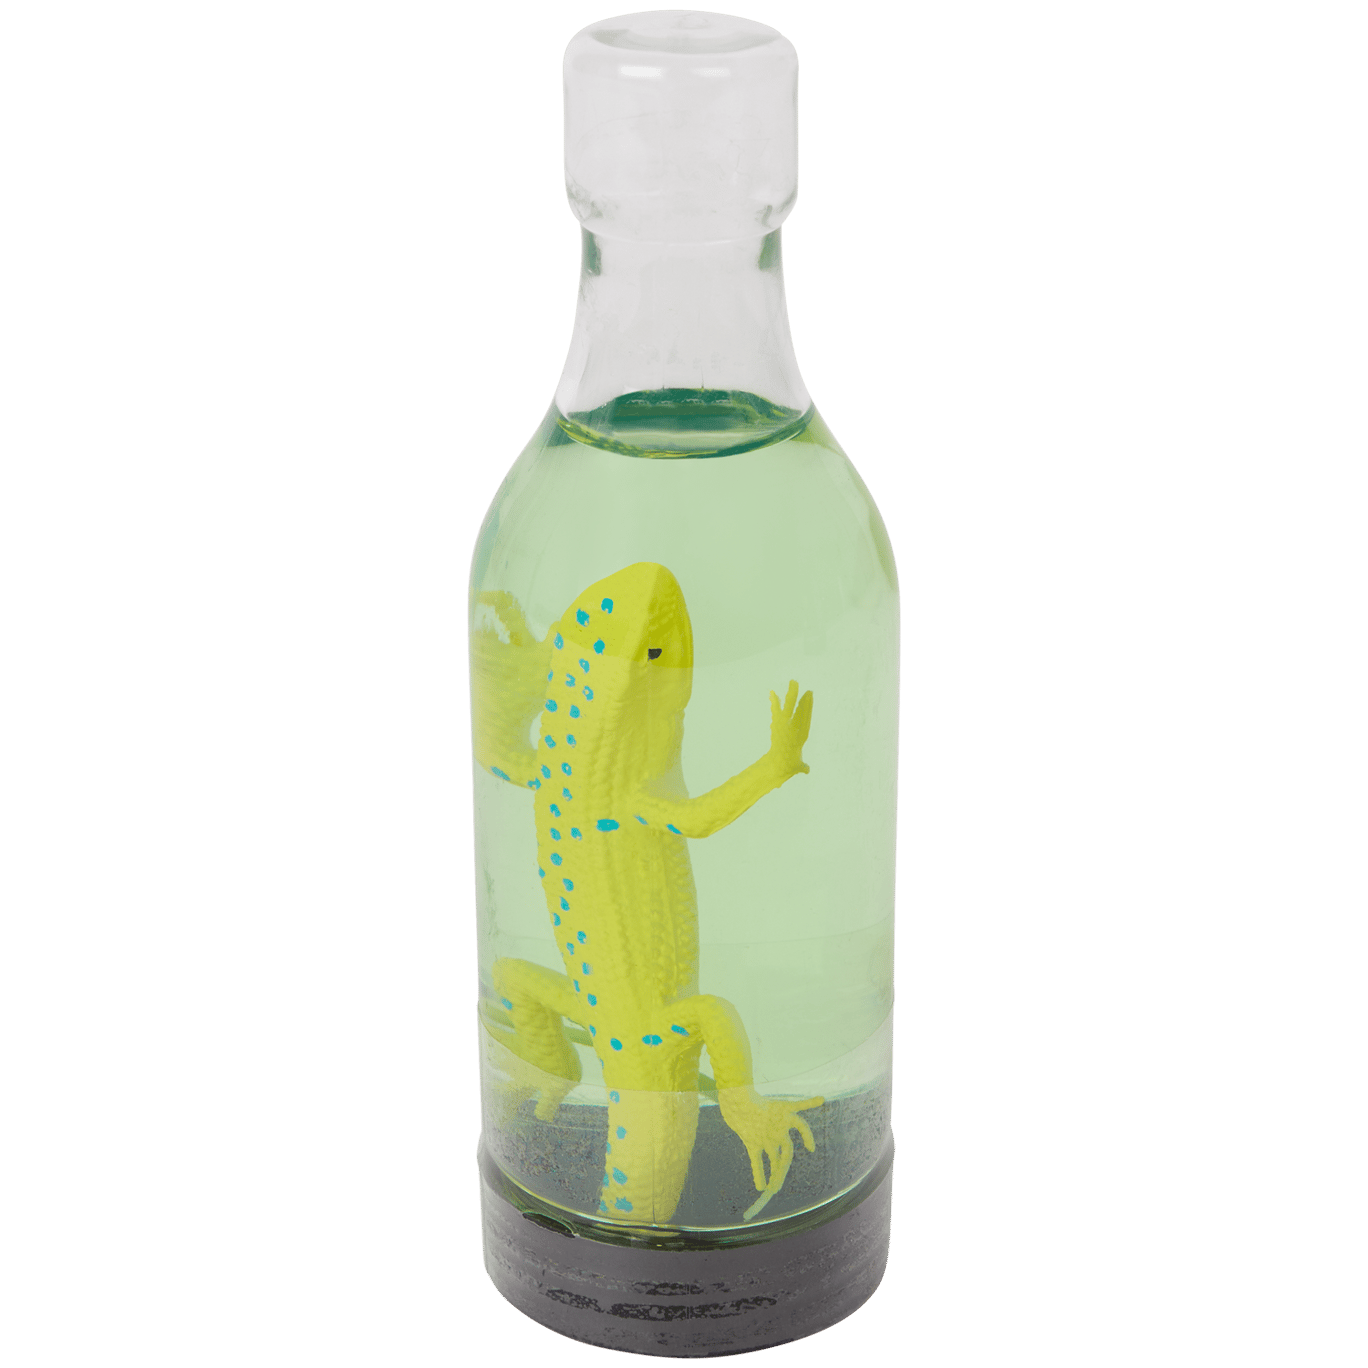 Animal dans un bouteille avec slime